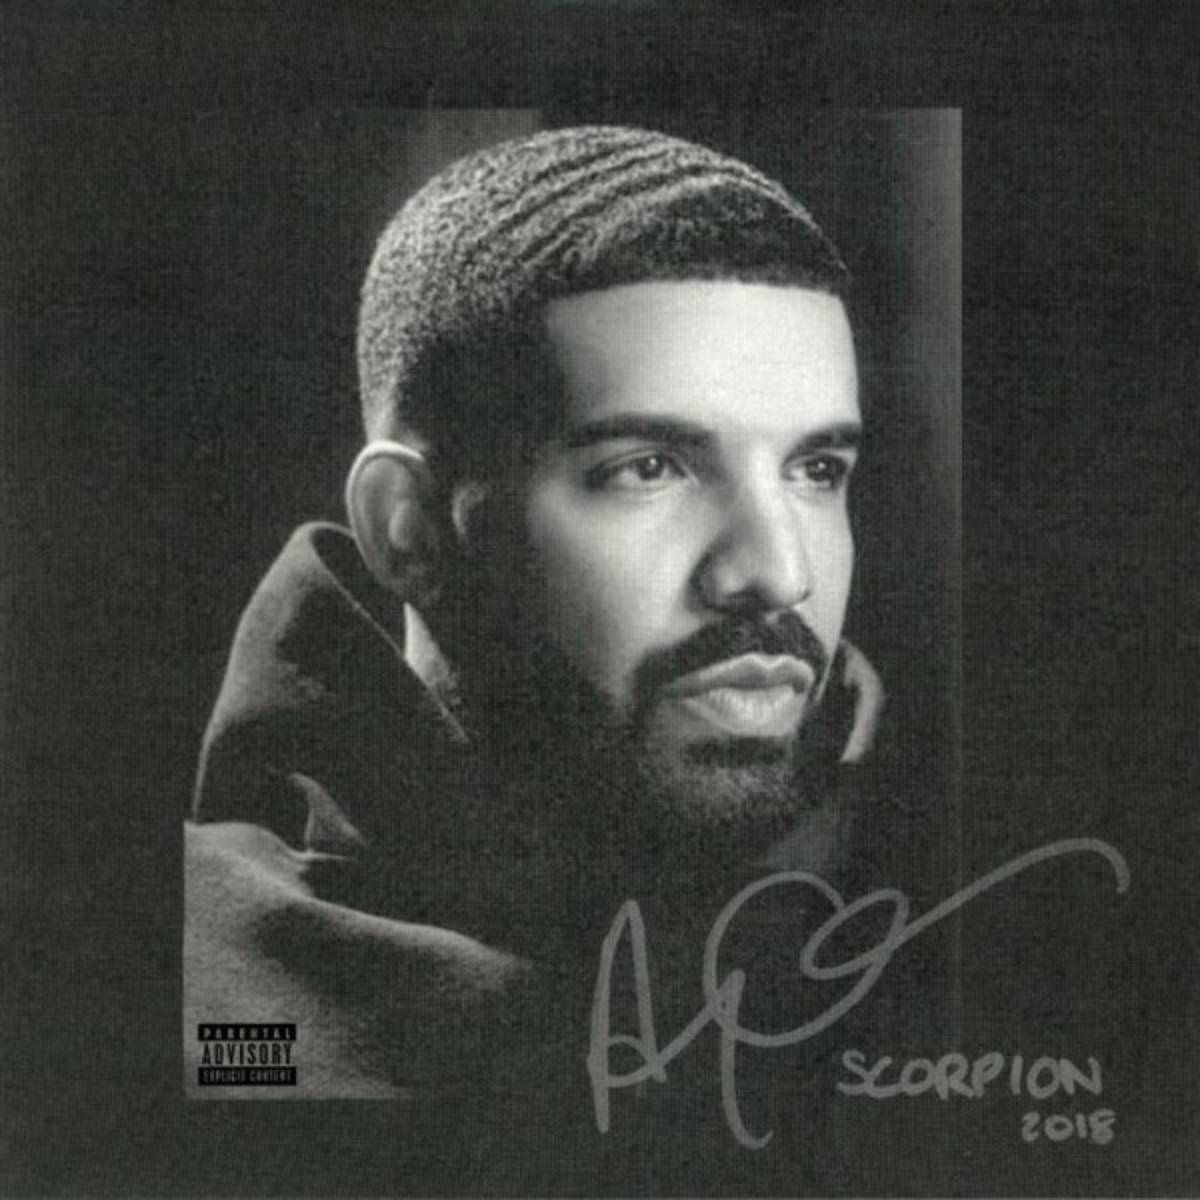 Scorpion (double album de l'artiste canadien Drake)